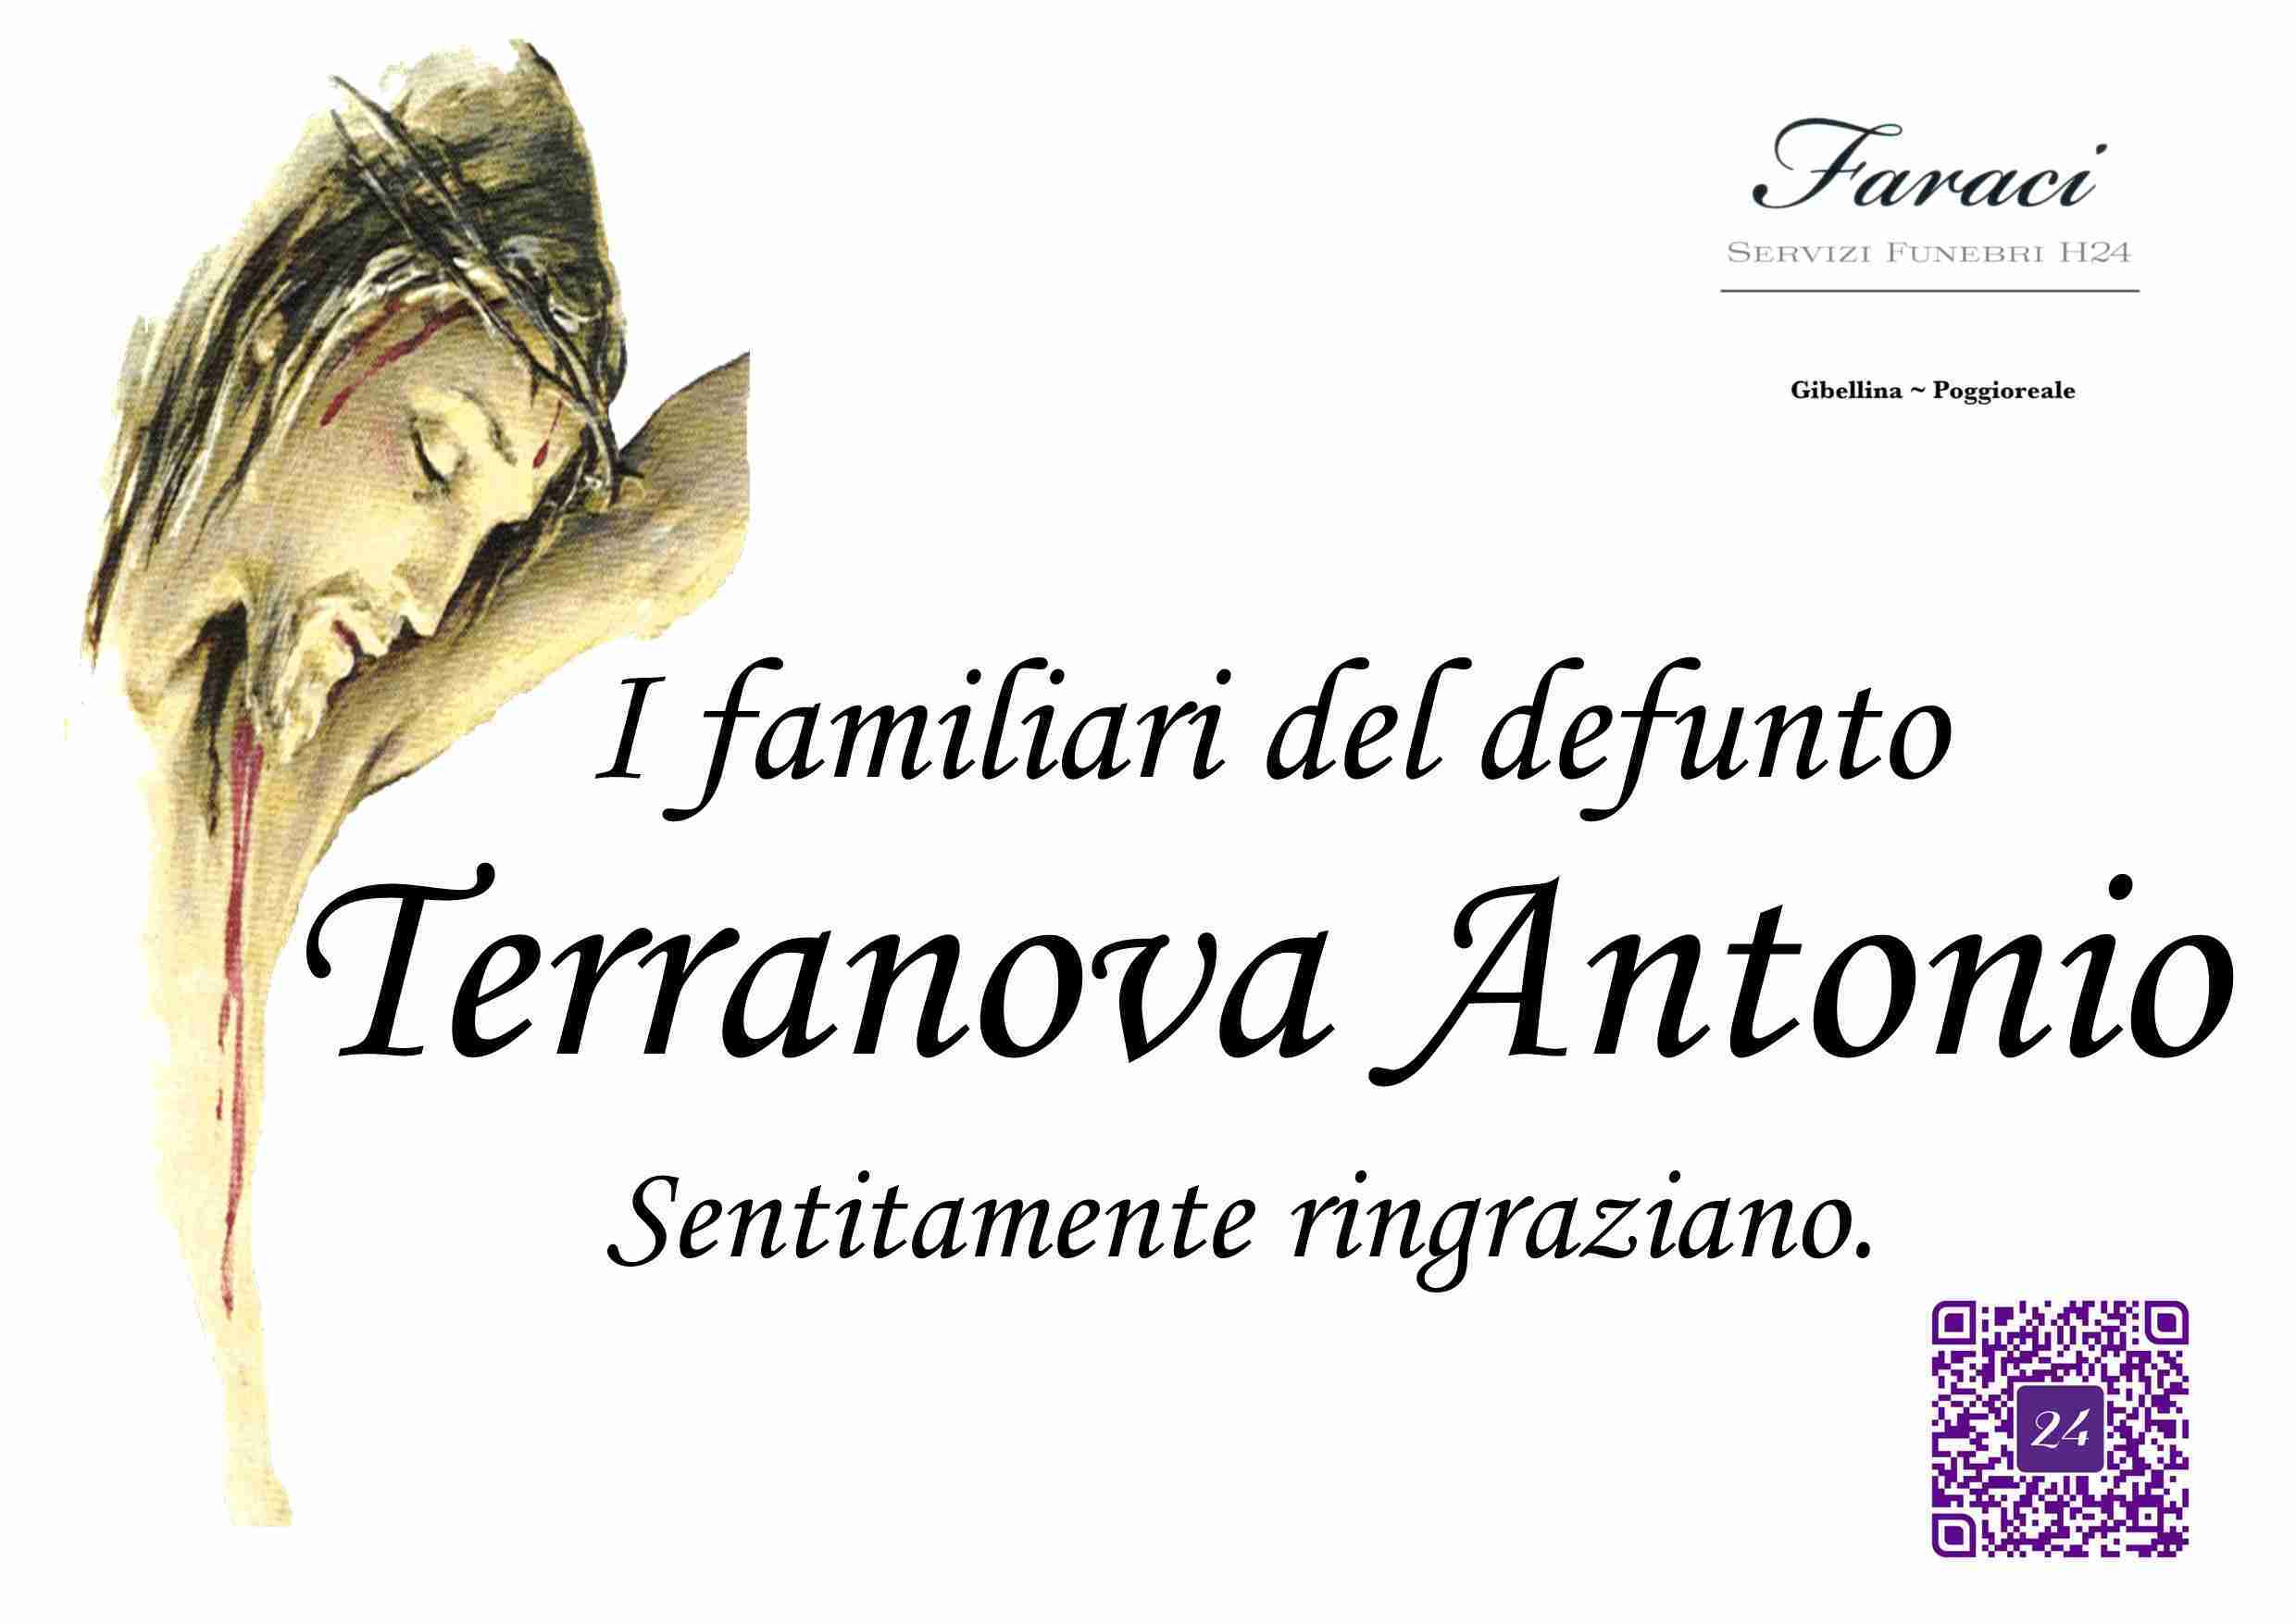 Antonio Terranova